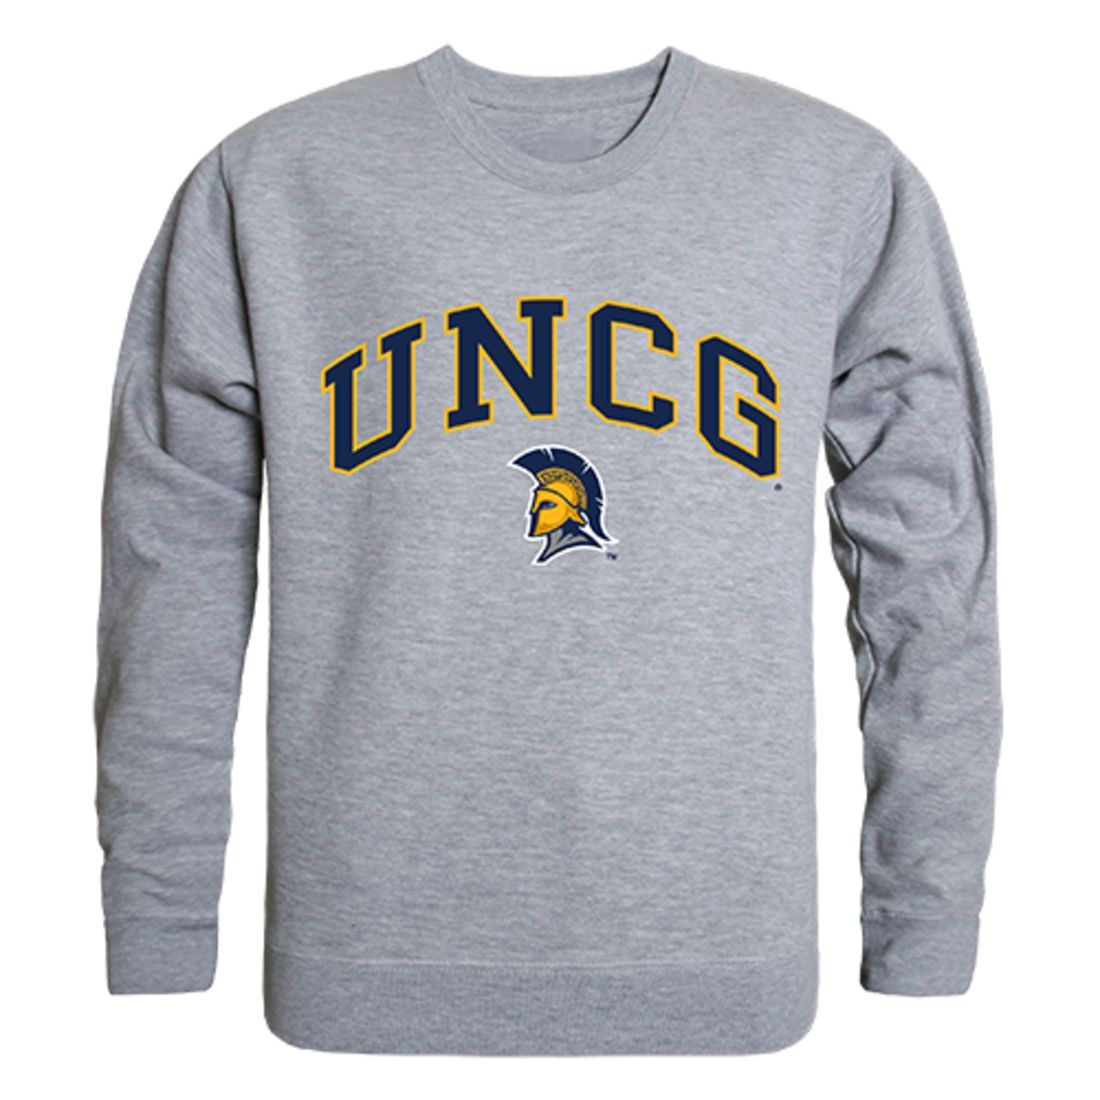 UNCG University of North Carolina at Greensboro Campus Crewneck Pullover Sweatshirt Sweater Heather Grey-Campus-Wardrobe